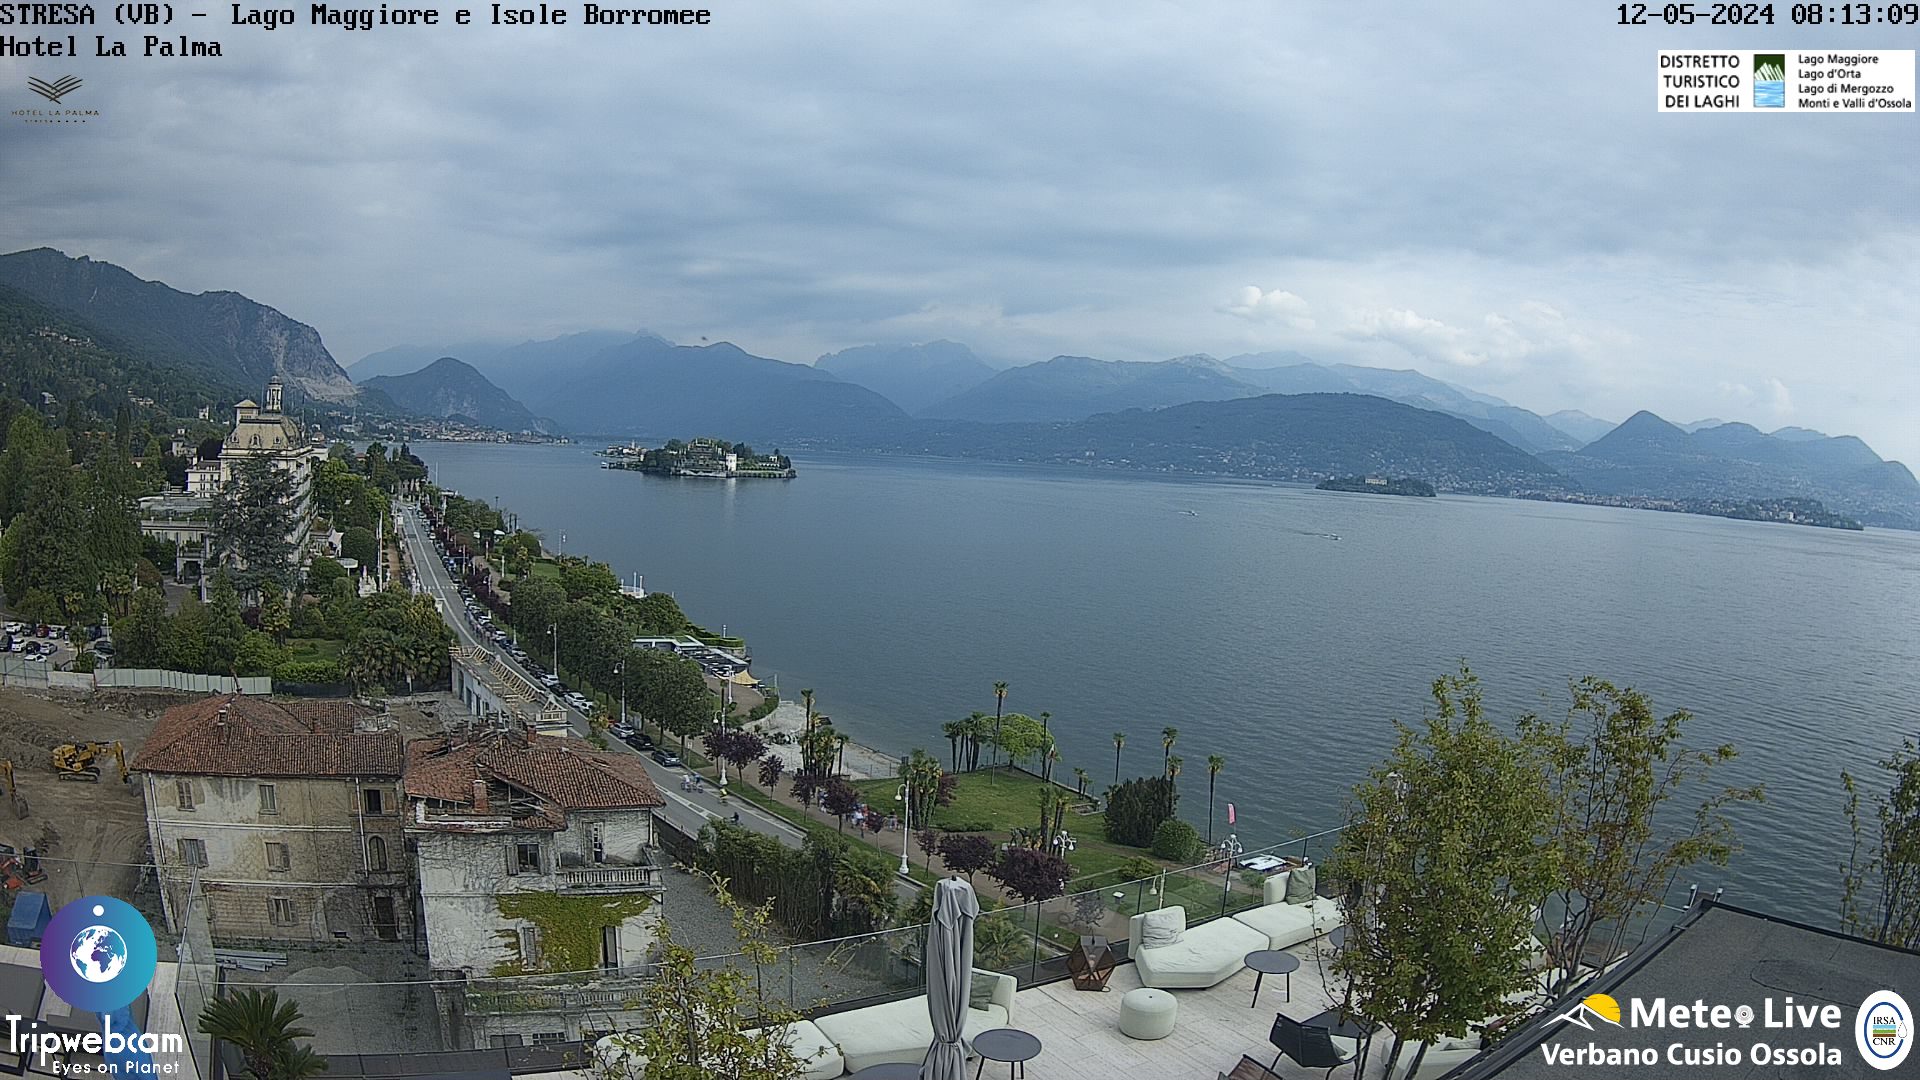 Stresa (Lago Maggiore) Di. 09:18